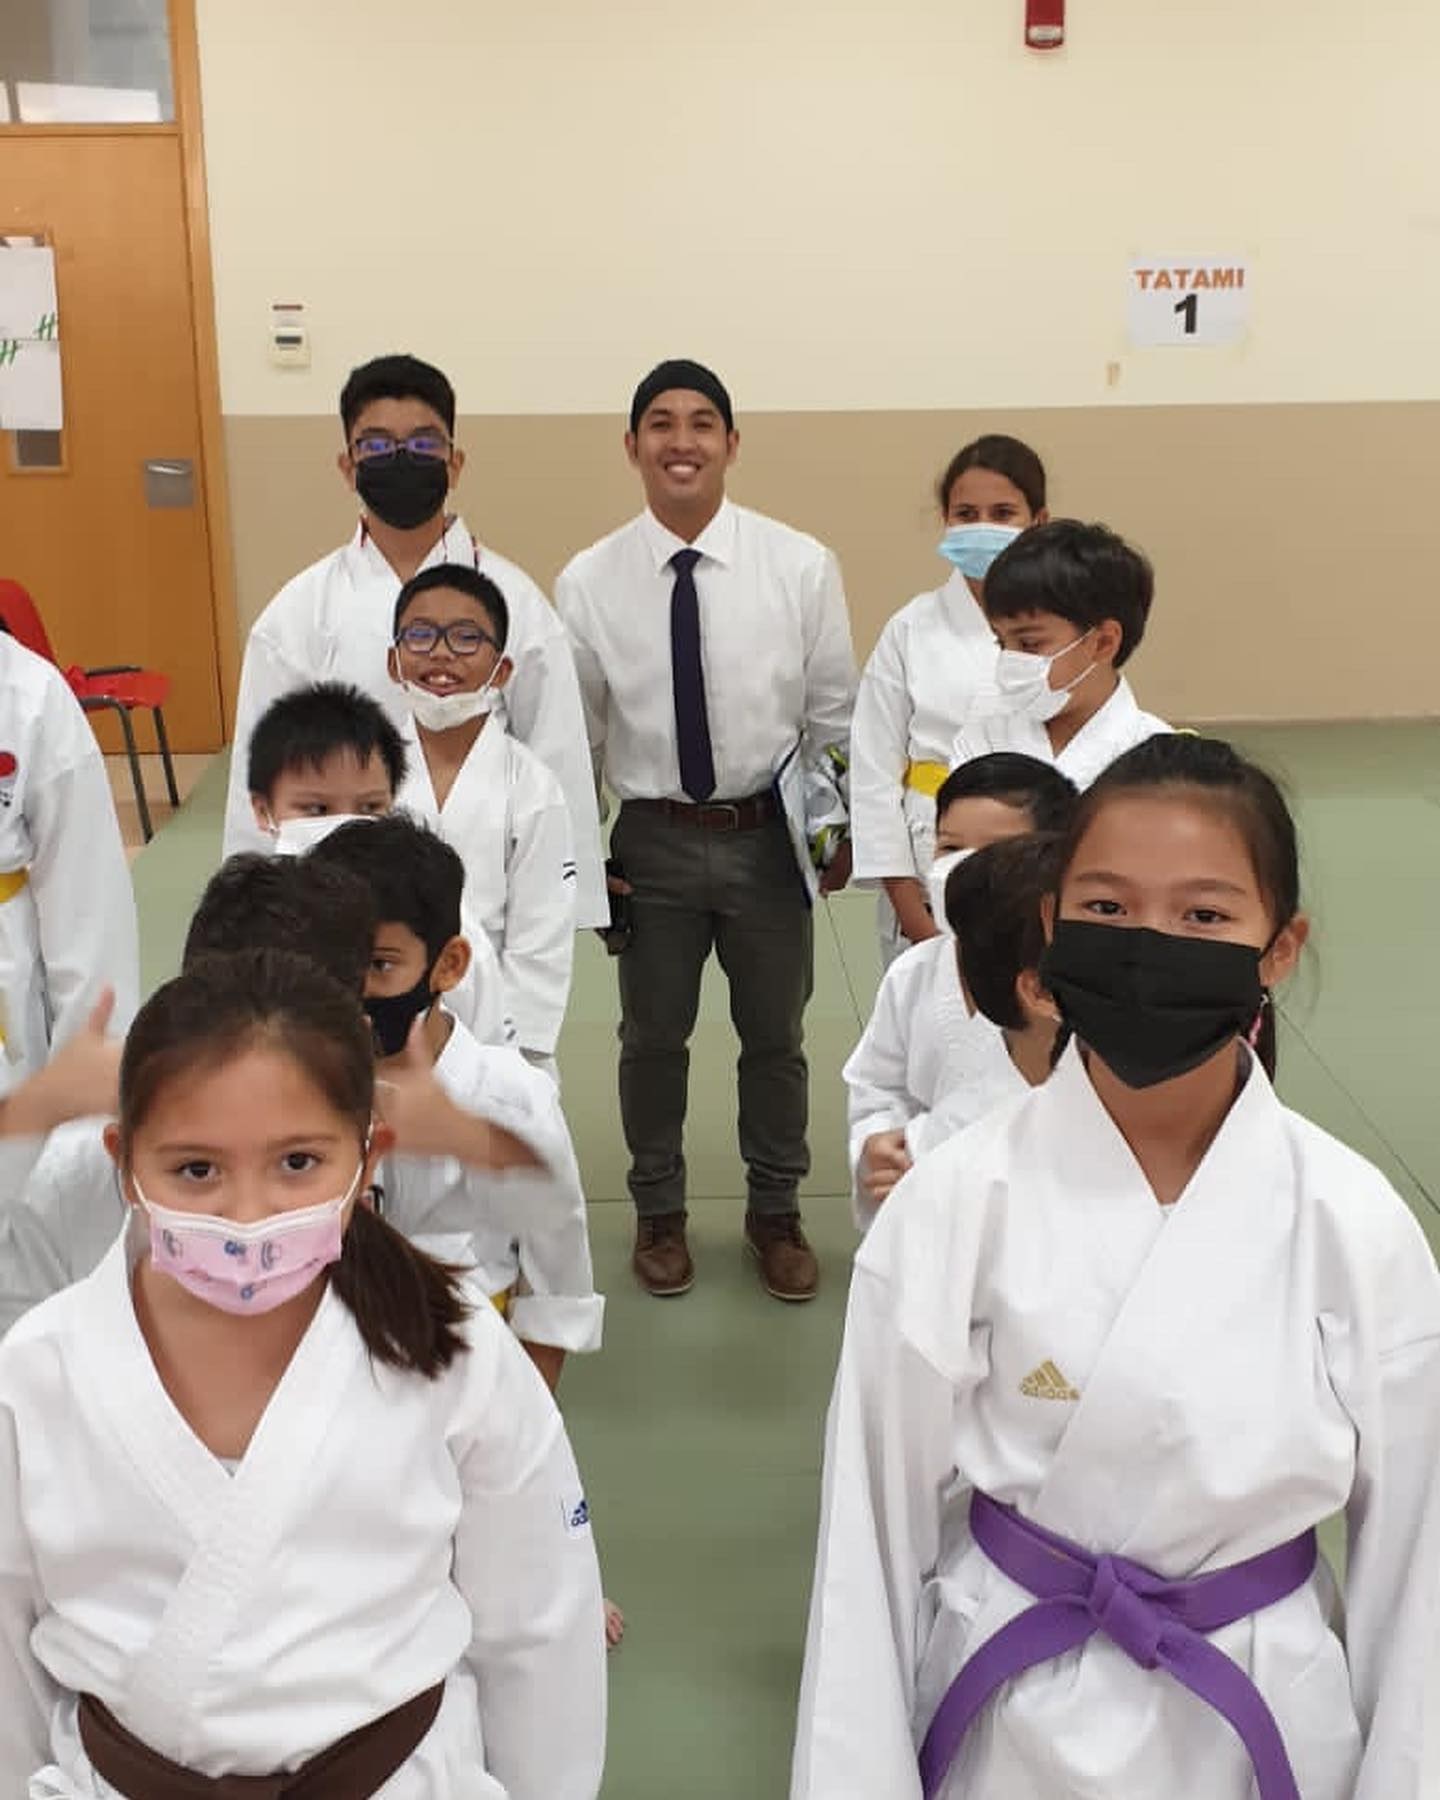 Shitokai Karatedo Society